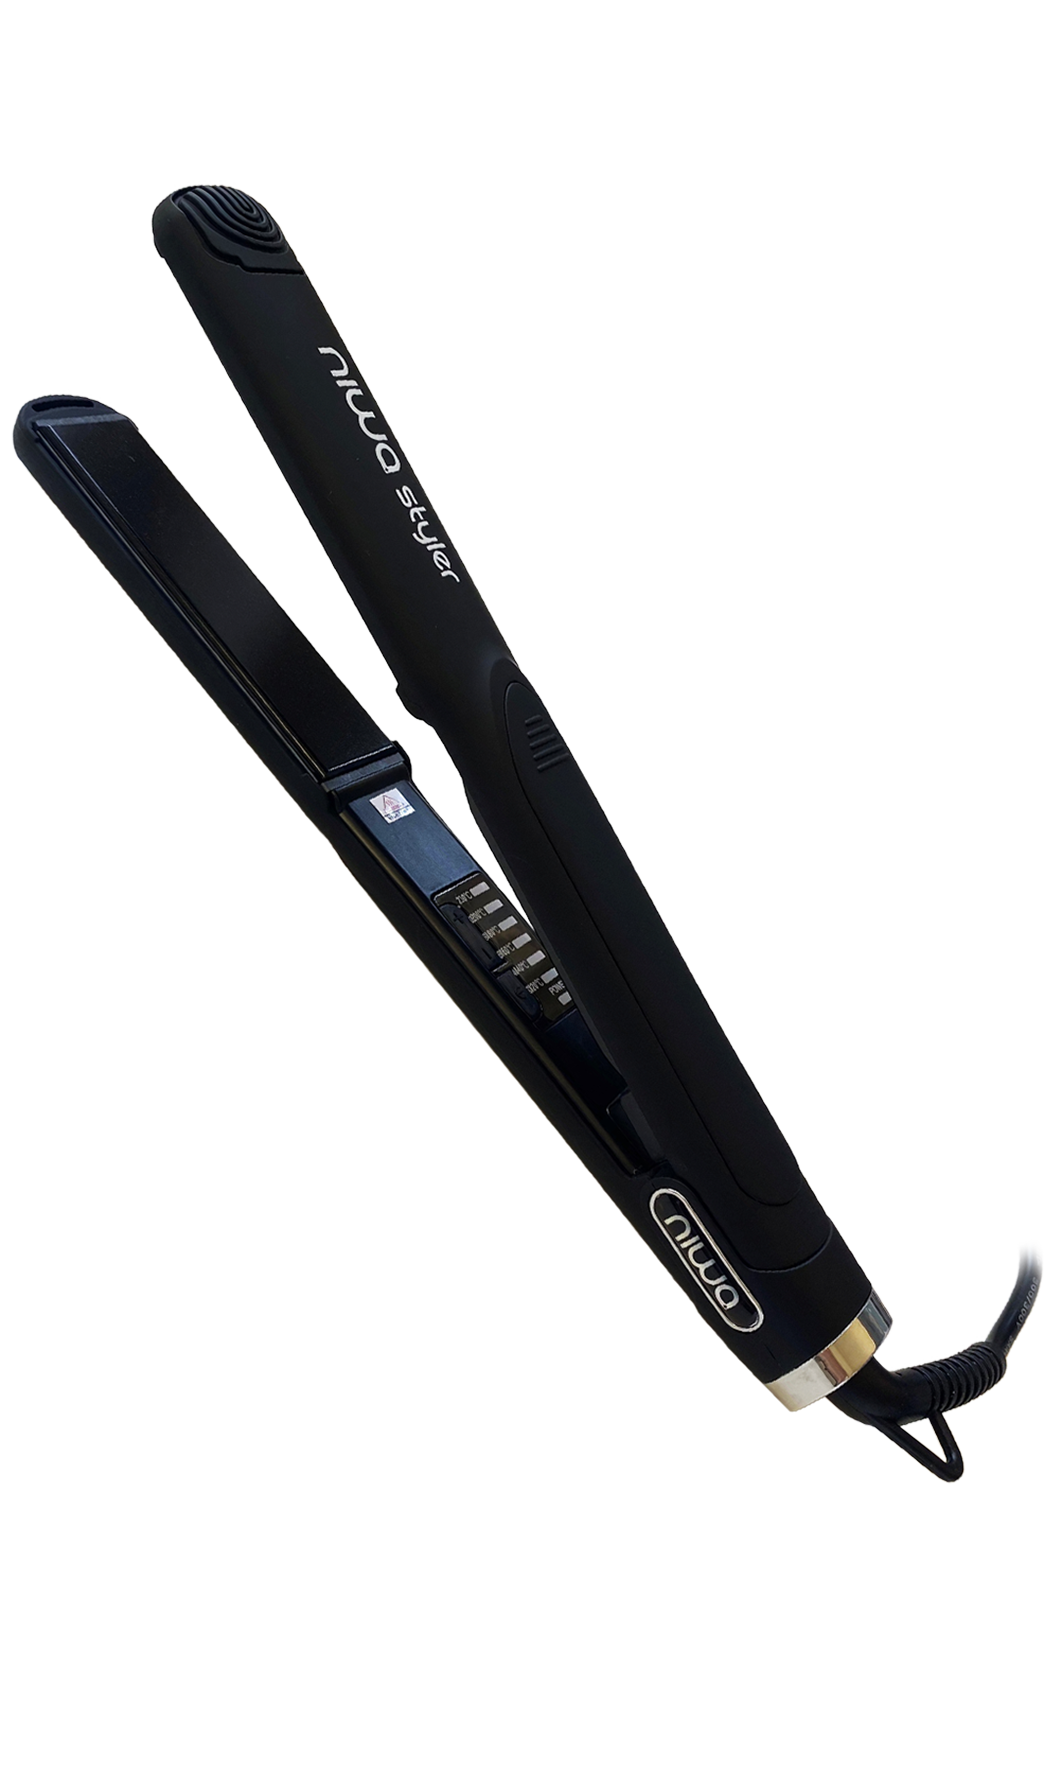 Der NIWA Styler Black: Professionelles Stylingtool mit Schweizer Qualität. Nutzt die neueste Nano-Keramik-Technologie für glattes, glänzendes, und frizzfreies Haar. Jetzt bei keune.ch erhältlich!